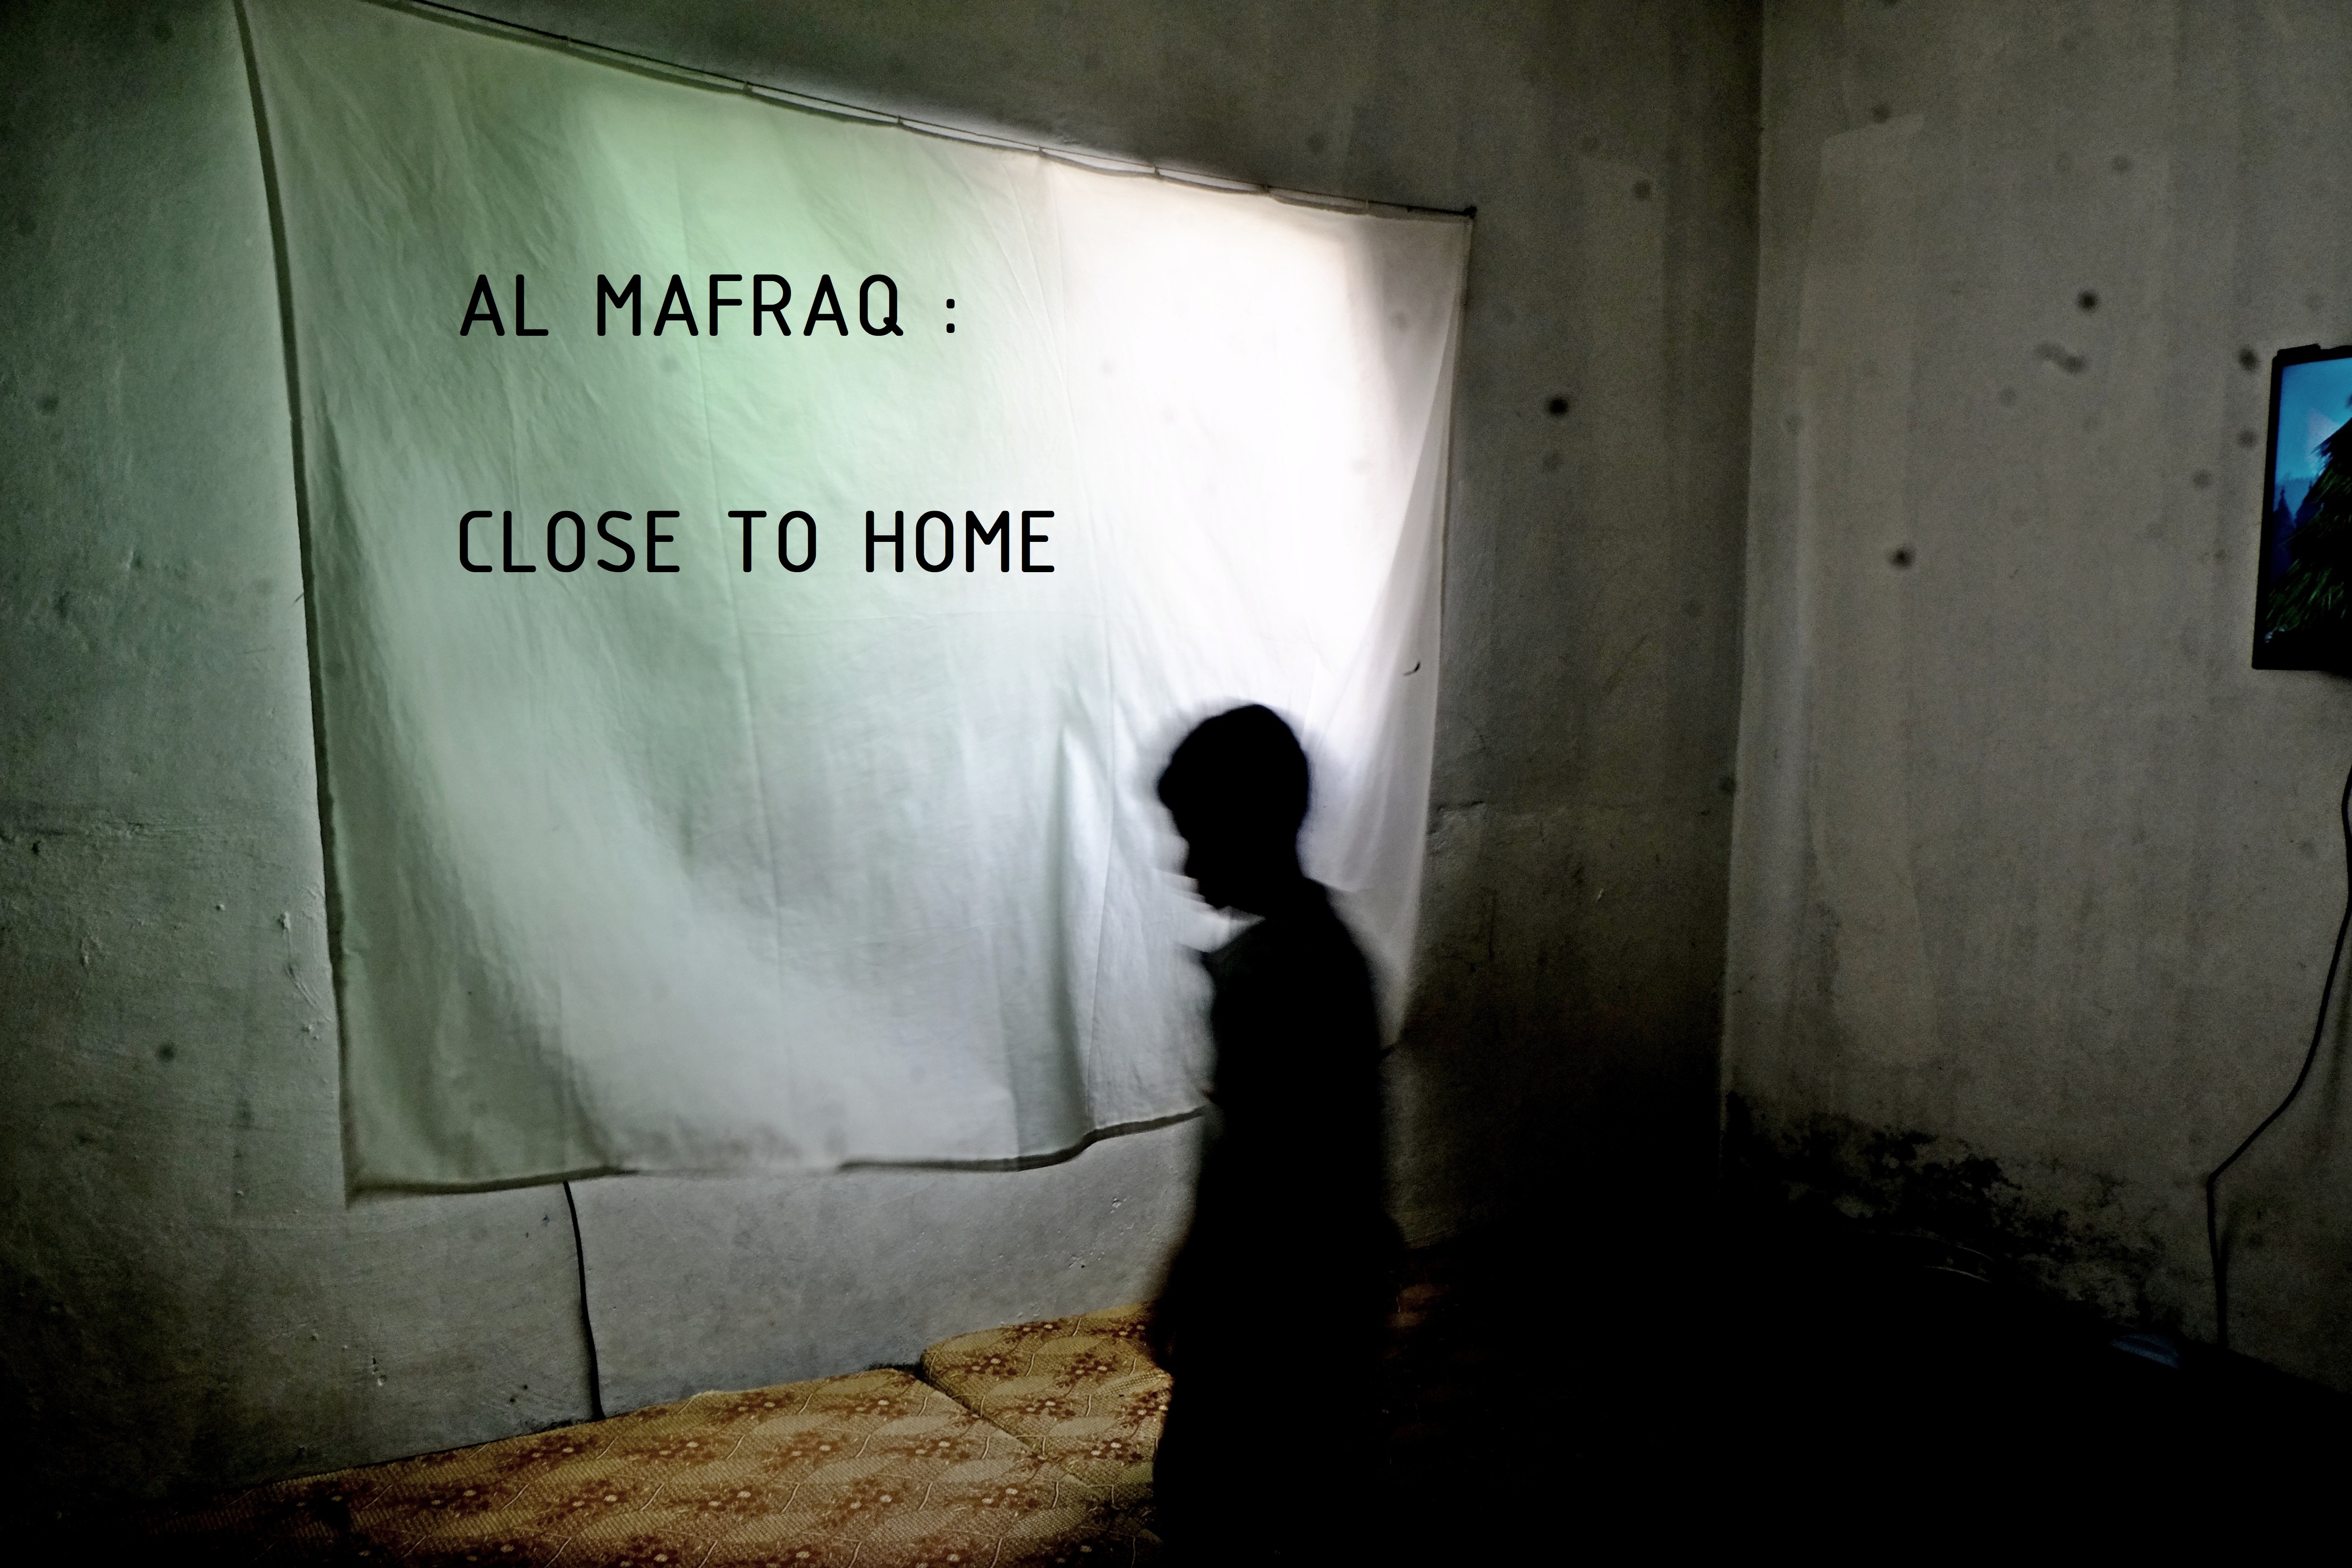 AL MAFRAQ : CLOSE TO HOME